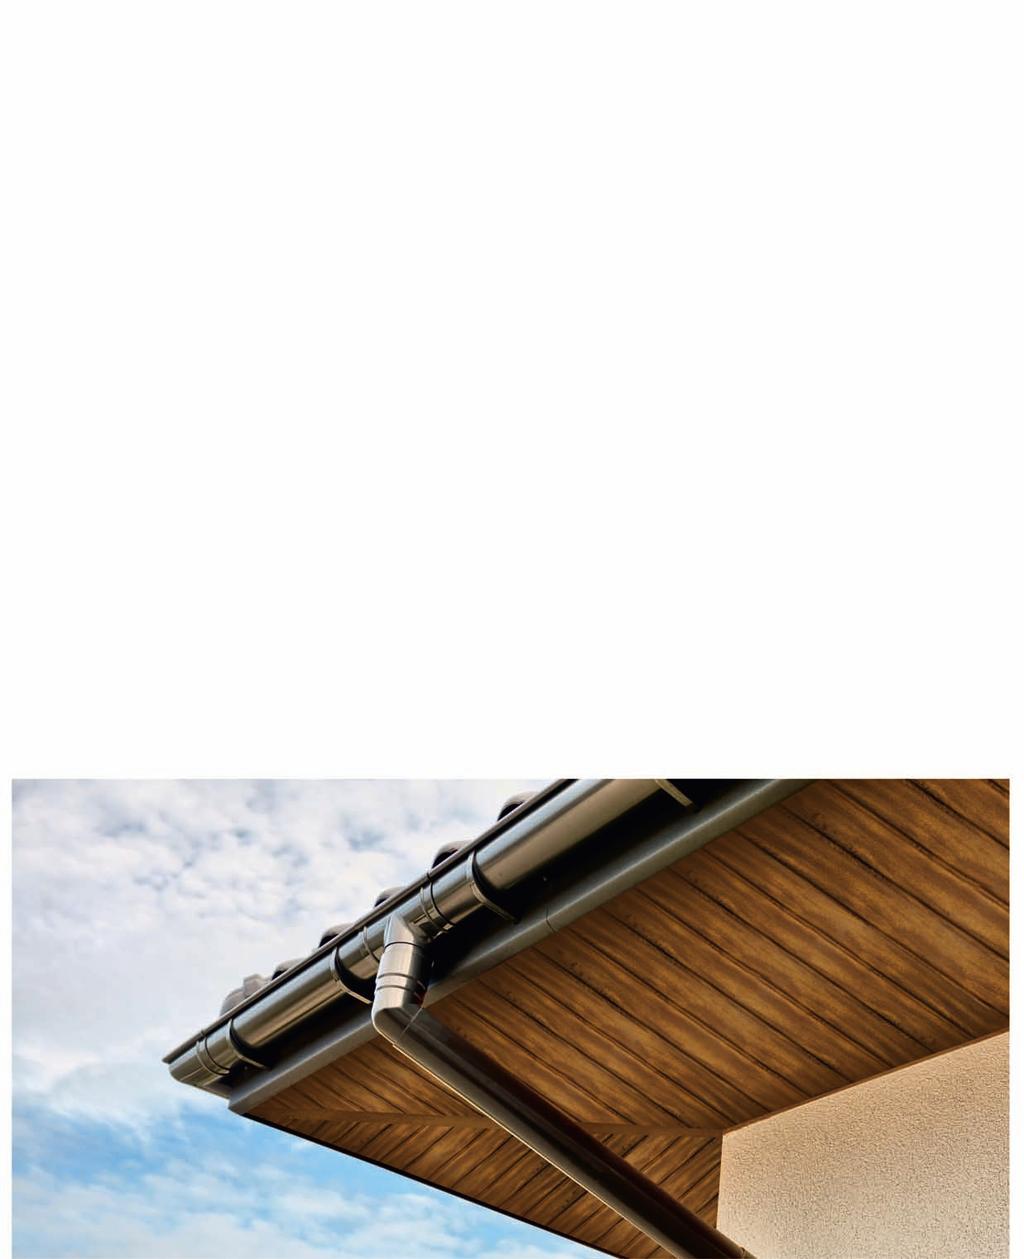 Przy obliczaniu efektywnej powierzchni dachowej należy posłużyć się wzorem: S = (B + 0,5 C) x L L Maksymalne powierzchnie odwadniane przez systemy rynnowe Gamrat w m² efektywnej